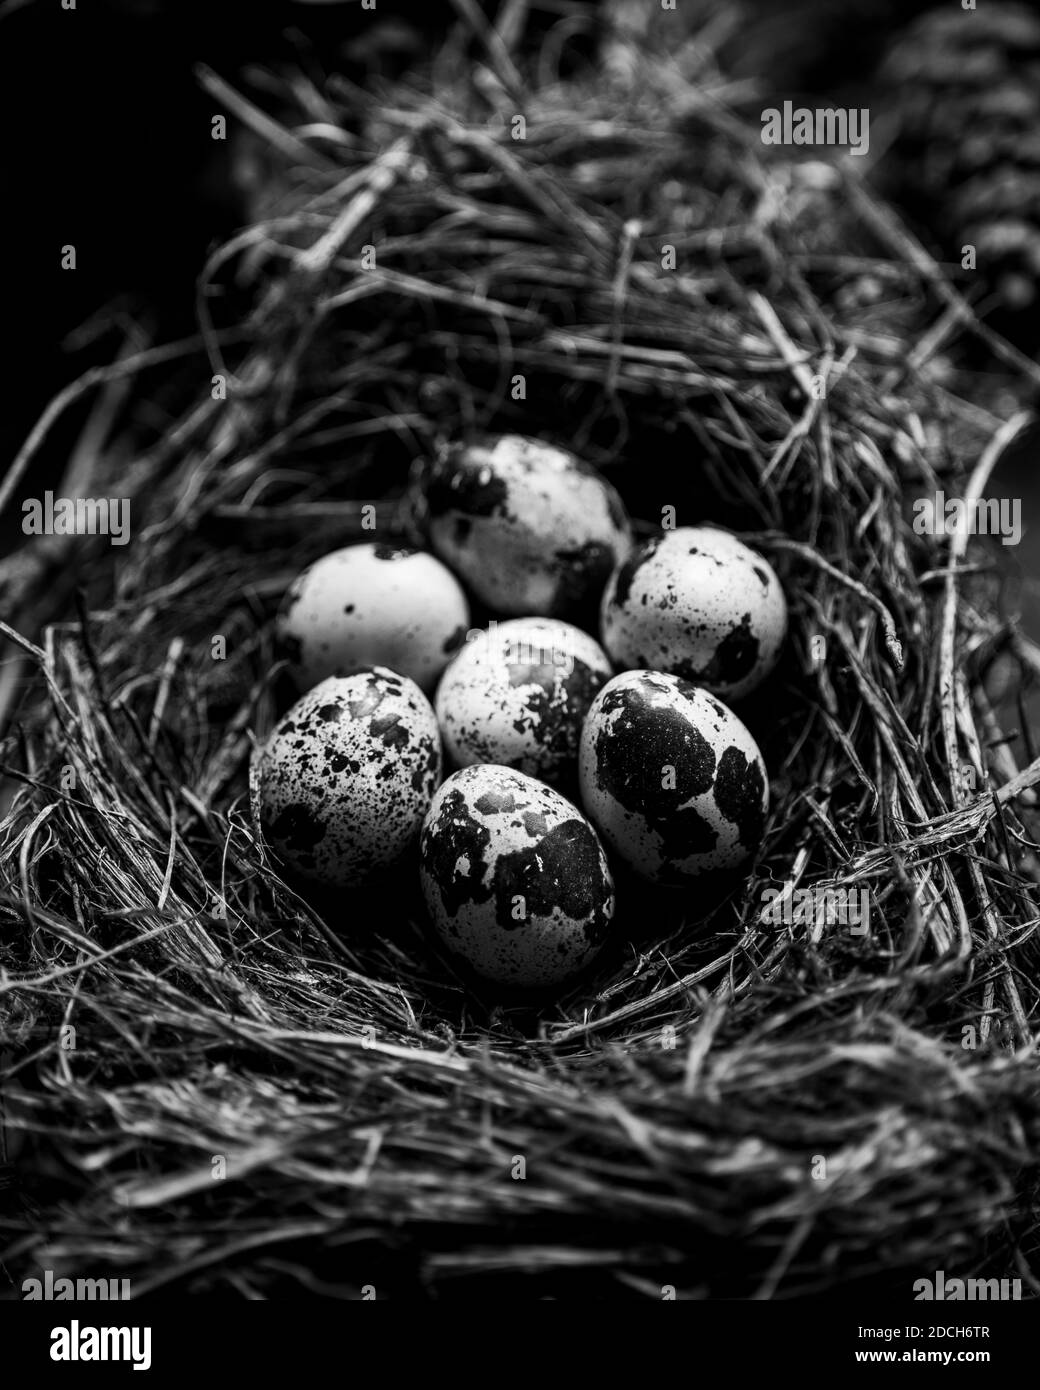 Eier von einer Wachtel in einer schale, rohe wachtel eier, fotografia in bianco e nero di uova di quaglia in un Nest, uova di quaglie in nido, Foto Stock